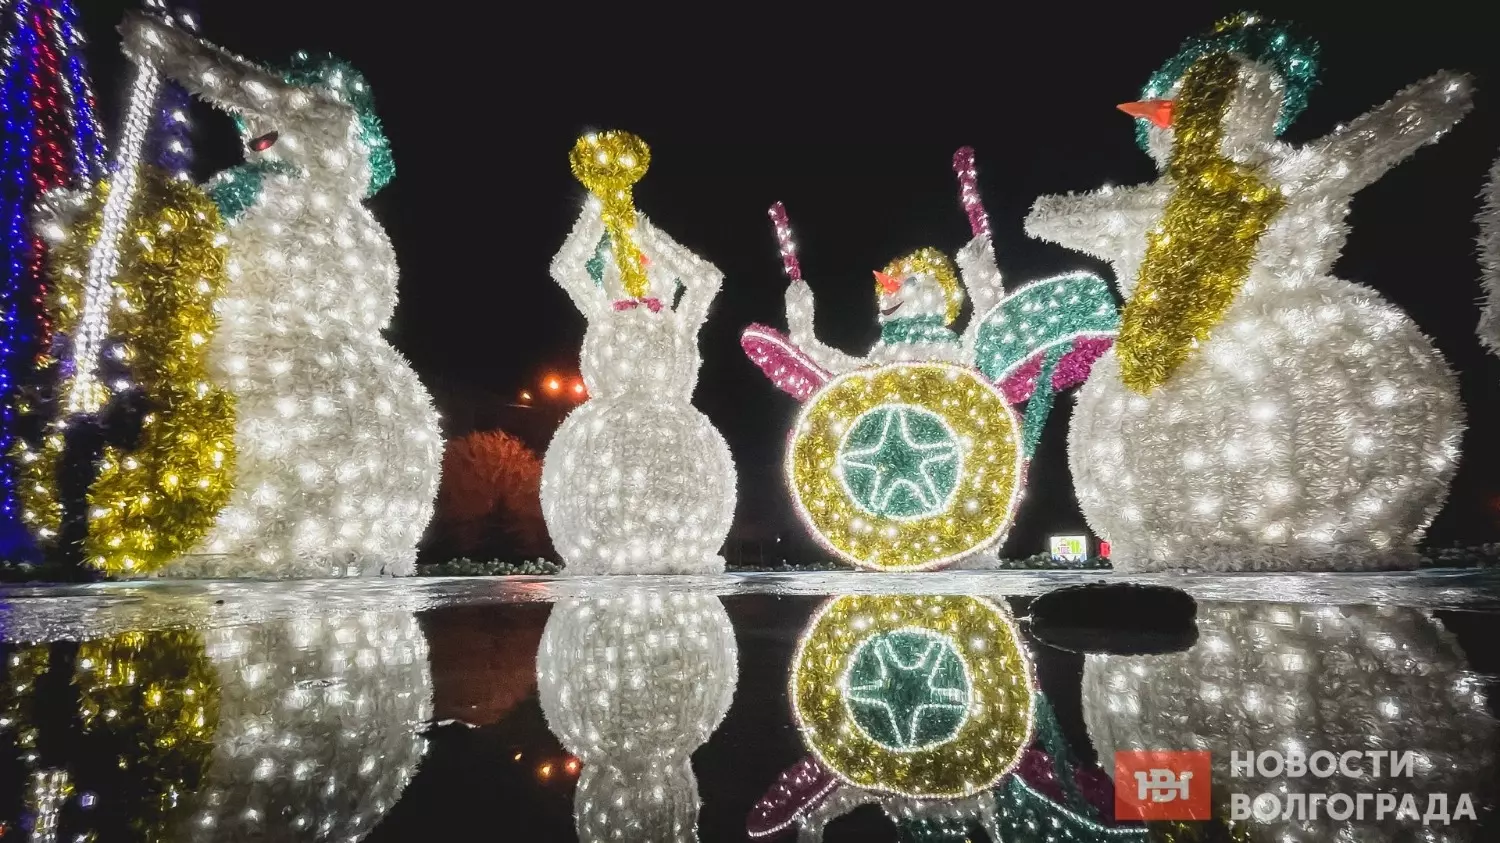 Светодиодные объекты создают новогоднее настроение задолго до праздника